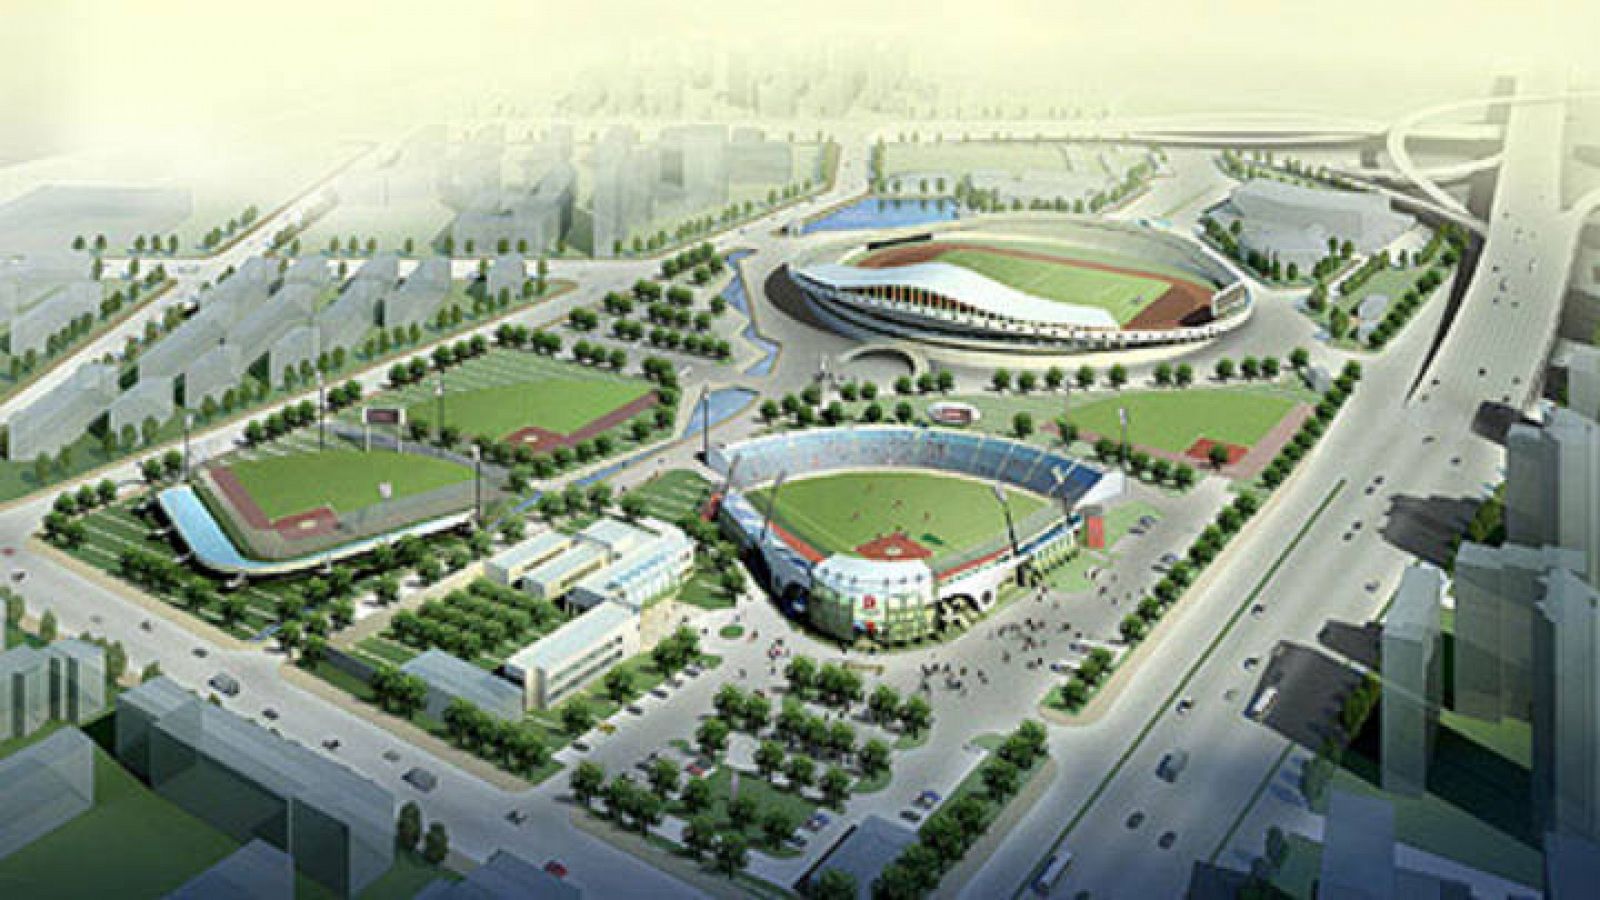 Maqueta del Estadio de Sóftbol de Fengtai